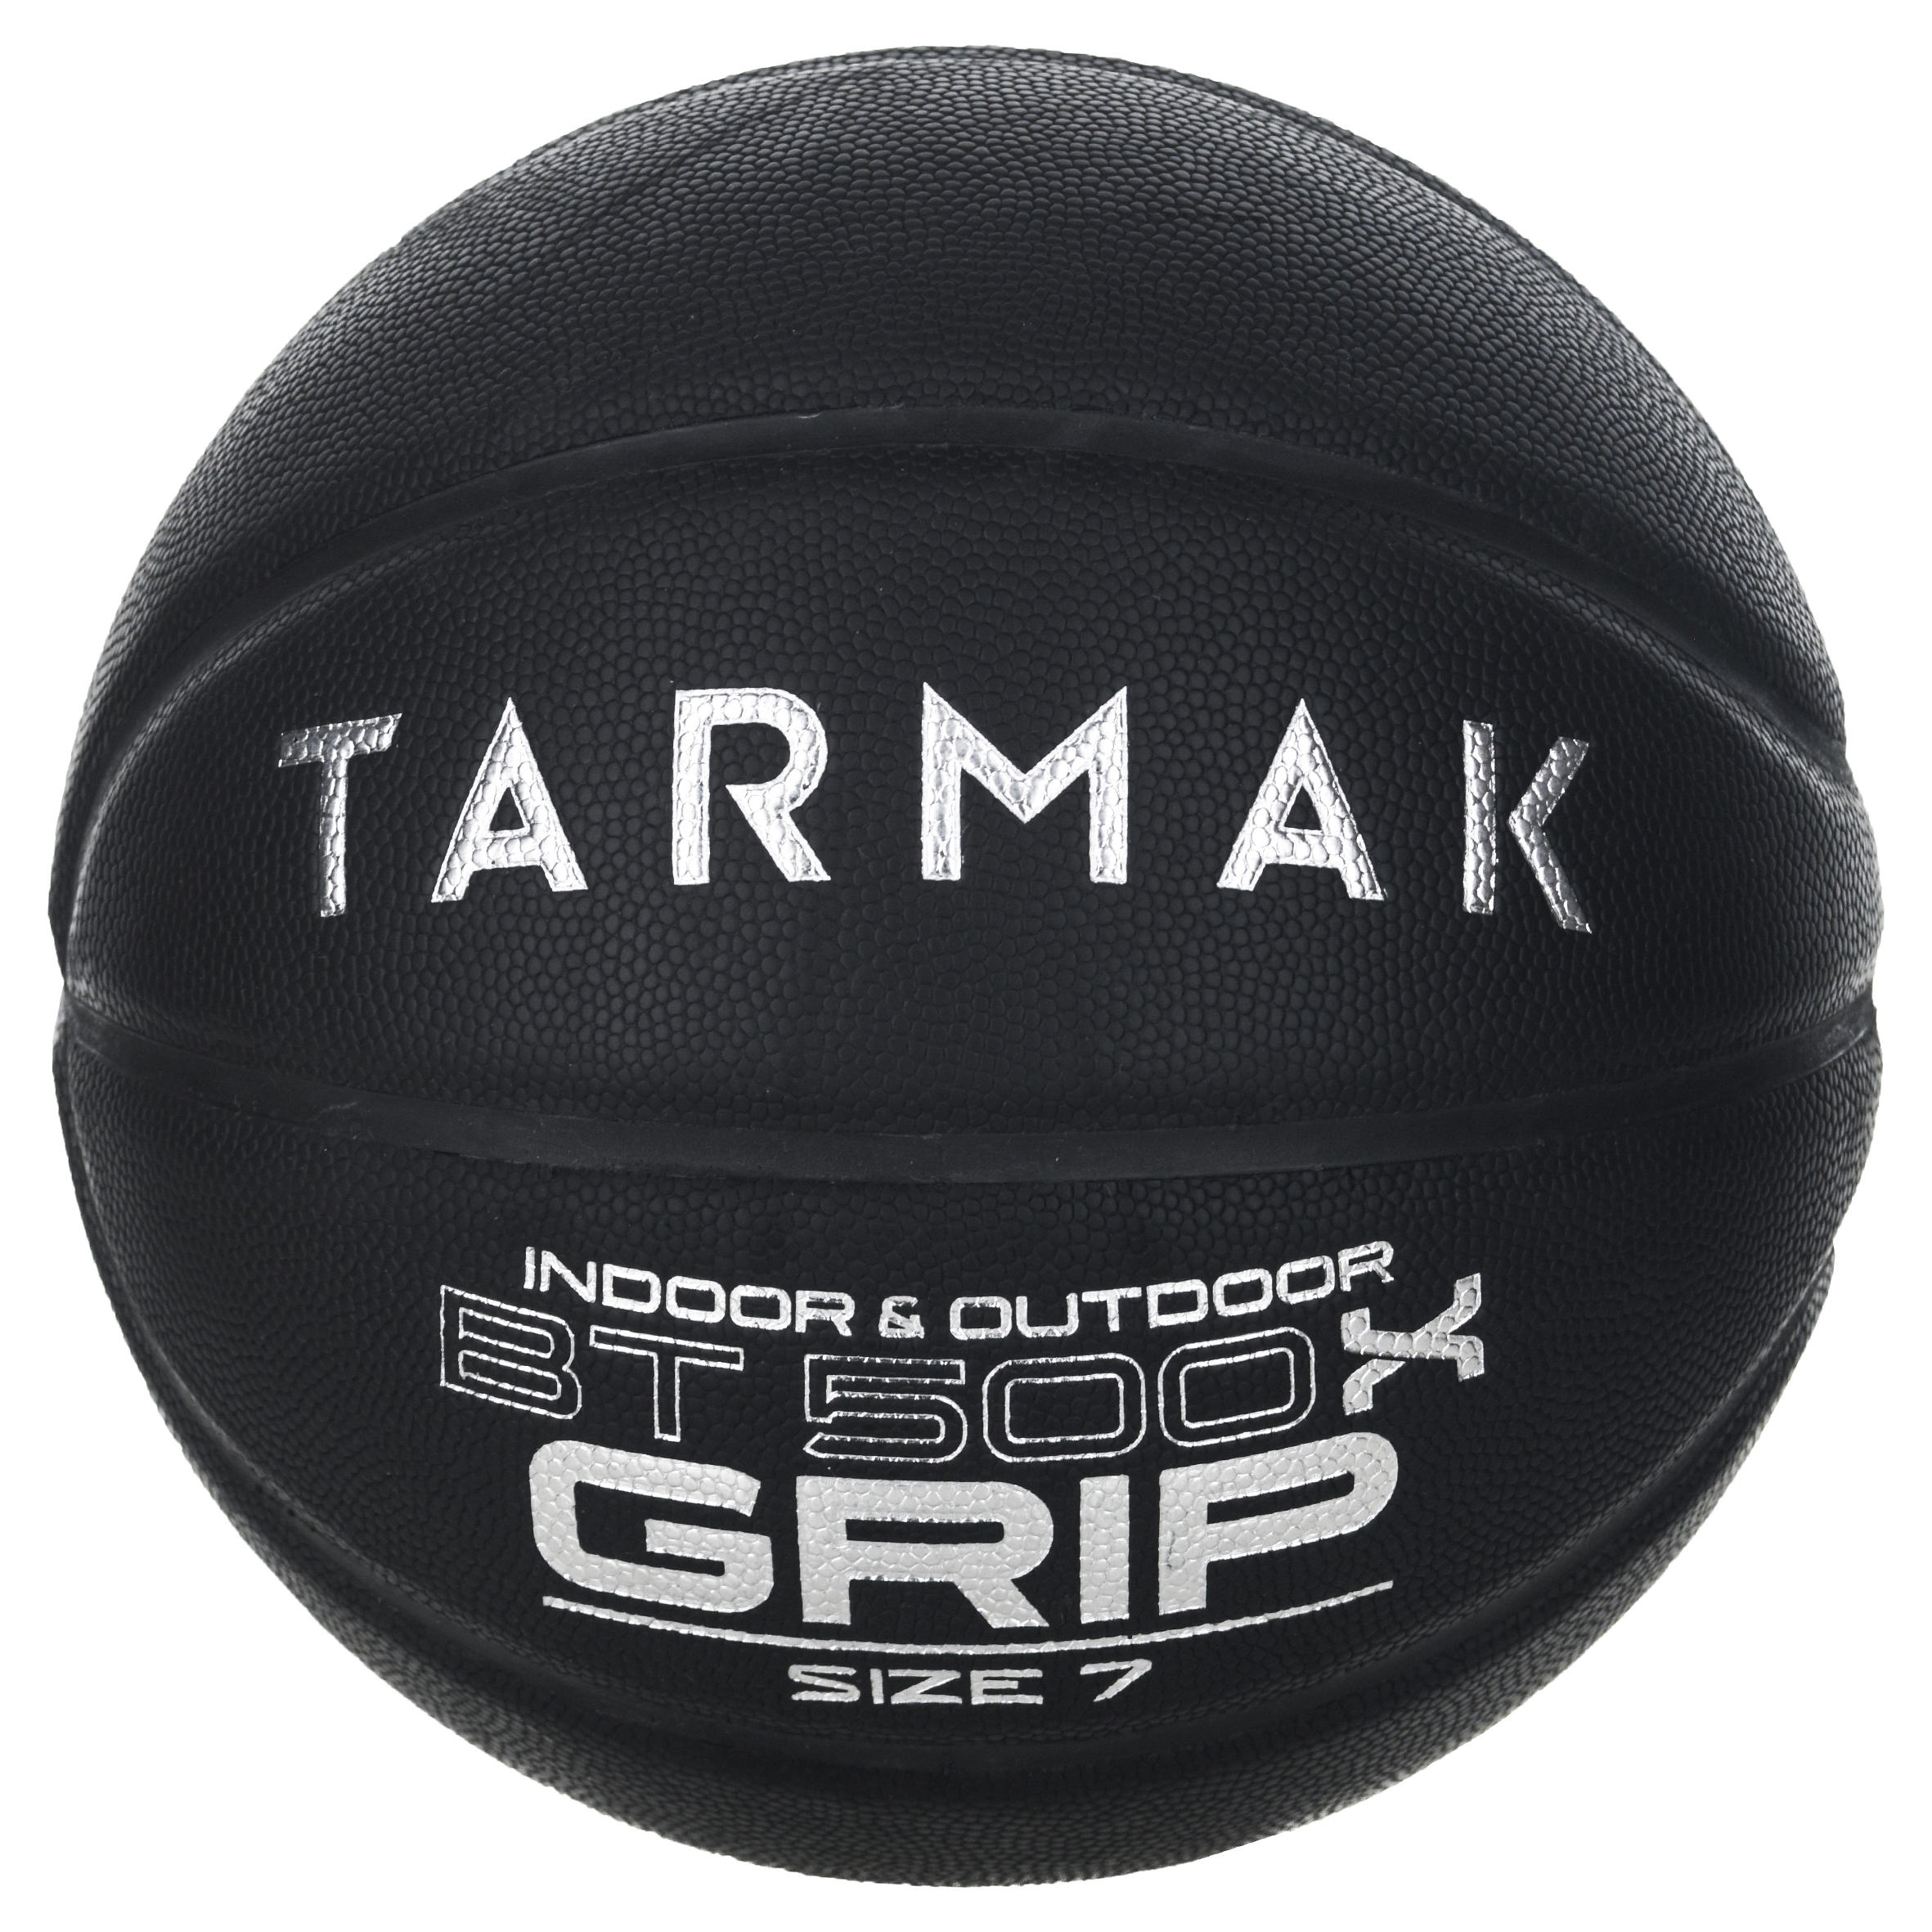 [ส่งฟรี ] ลูกบาสเกตบอล🏀 เบอร์ 7 สำหรับผู้ใหญ่รุ่น BT500 Grip (สีดำ) มาตราฐาน FIBA Basketball Ball 🏀 BT500 Grip Adult Size 7 Basketball - Black Great ball feel ลูกบาสเกตบอล 6 7